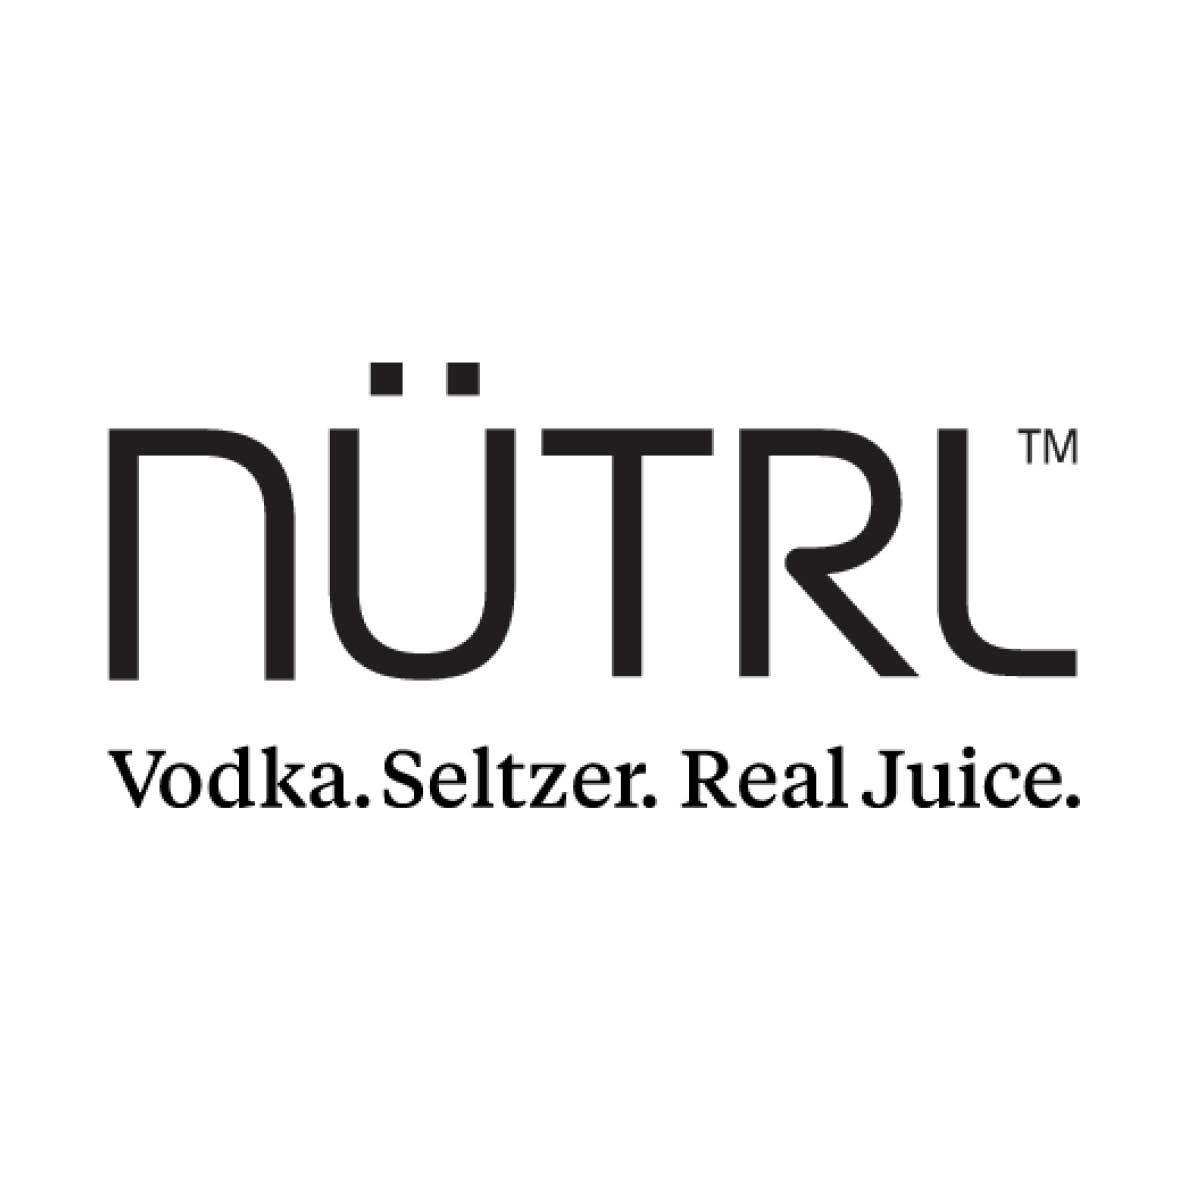 NUTRL Logo.jpg